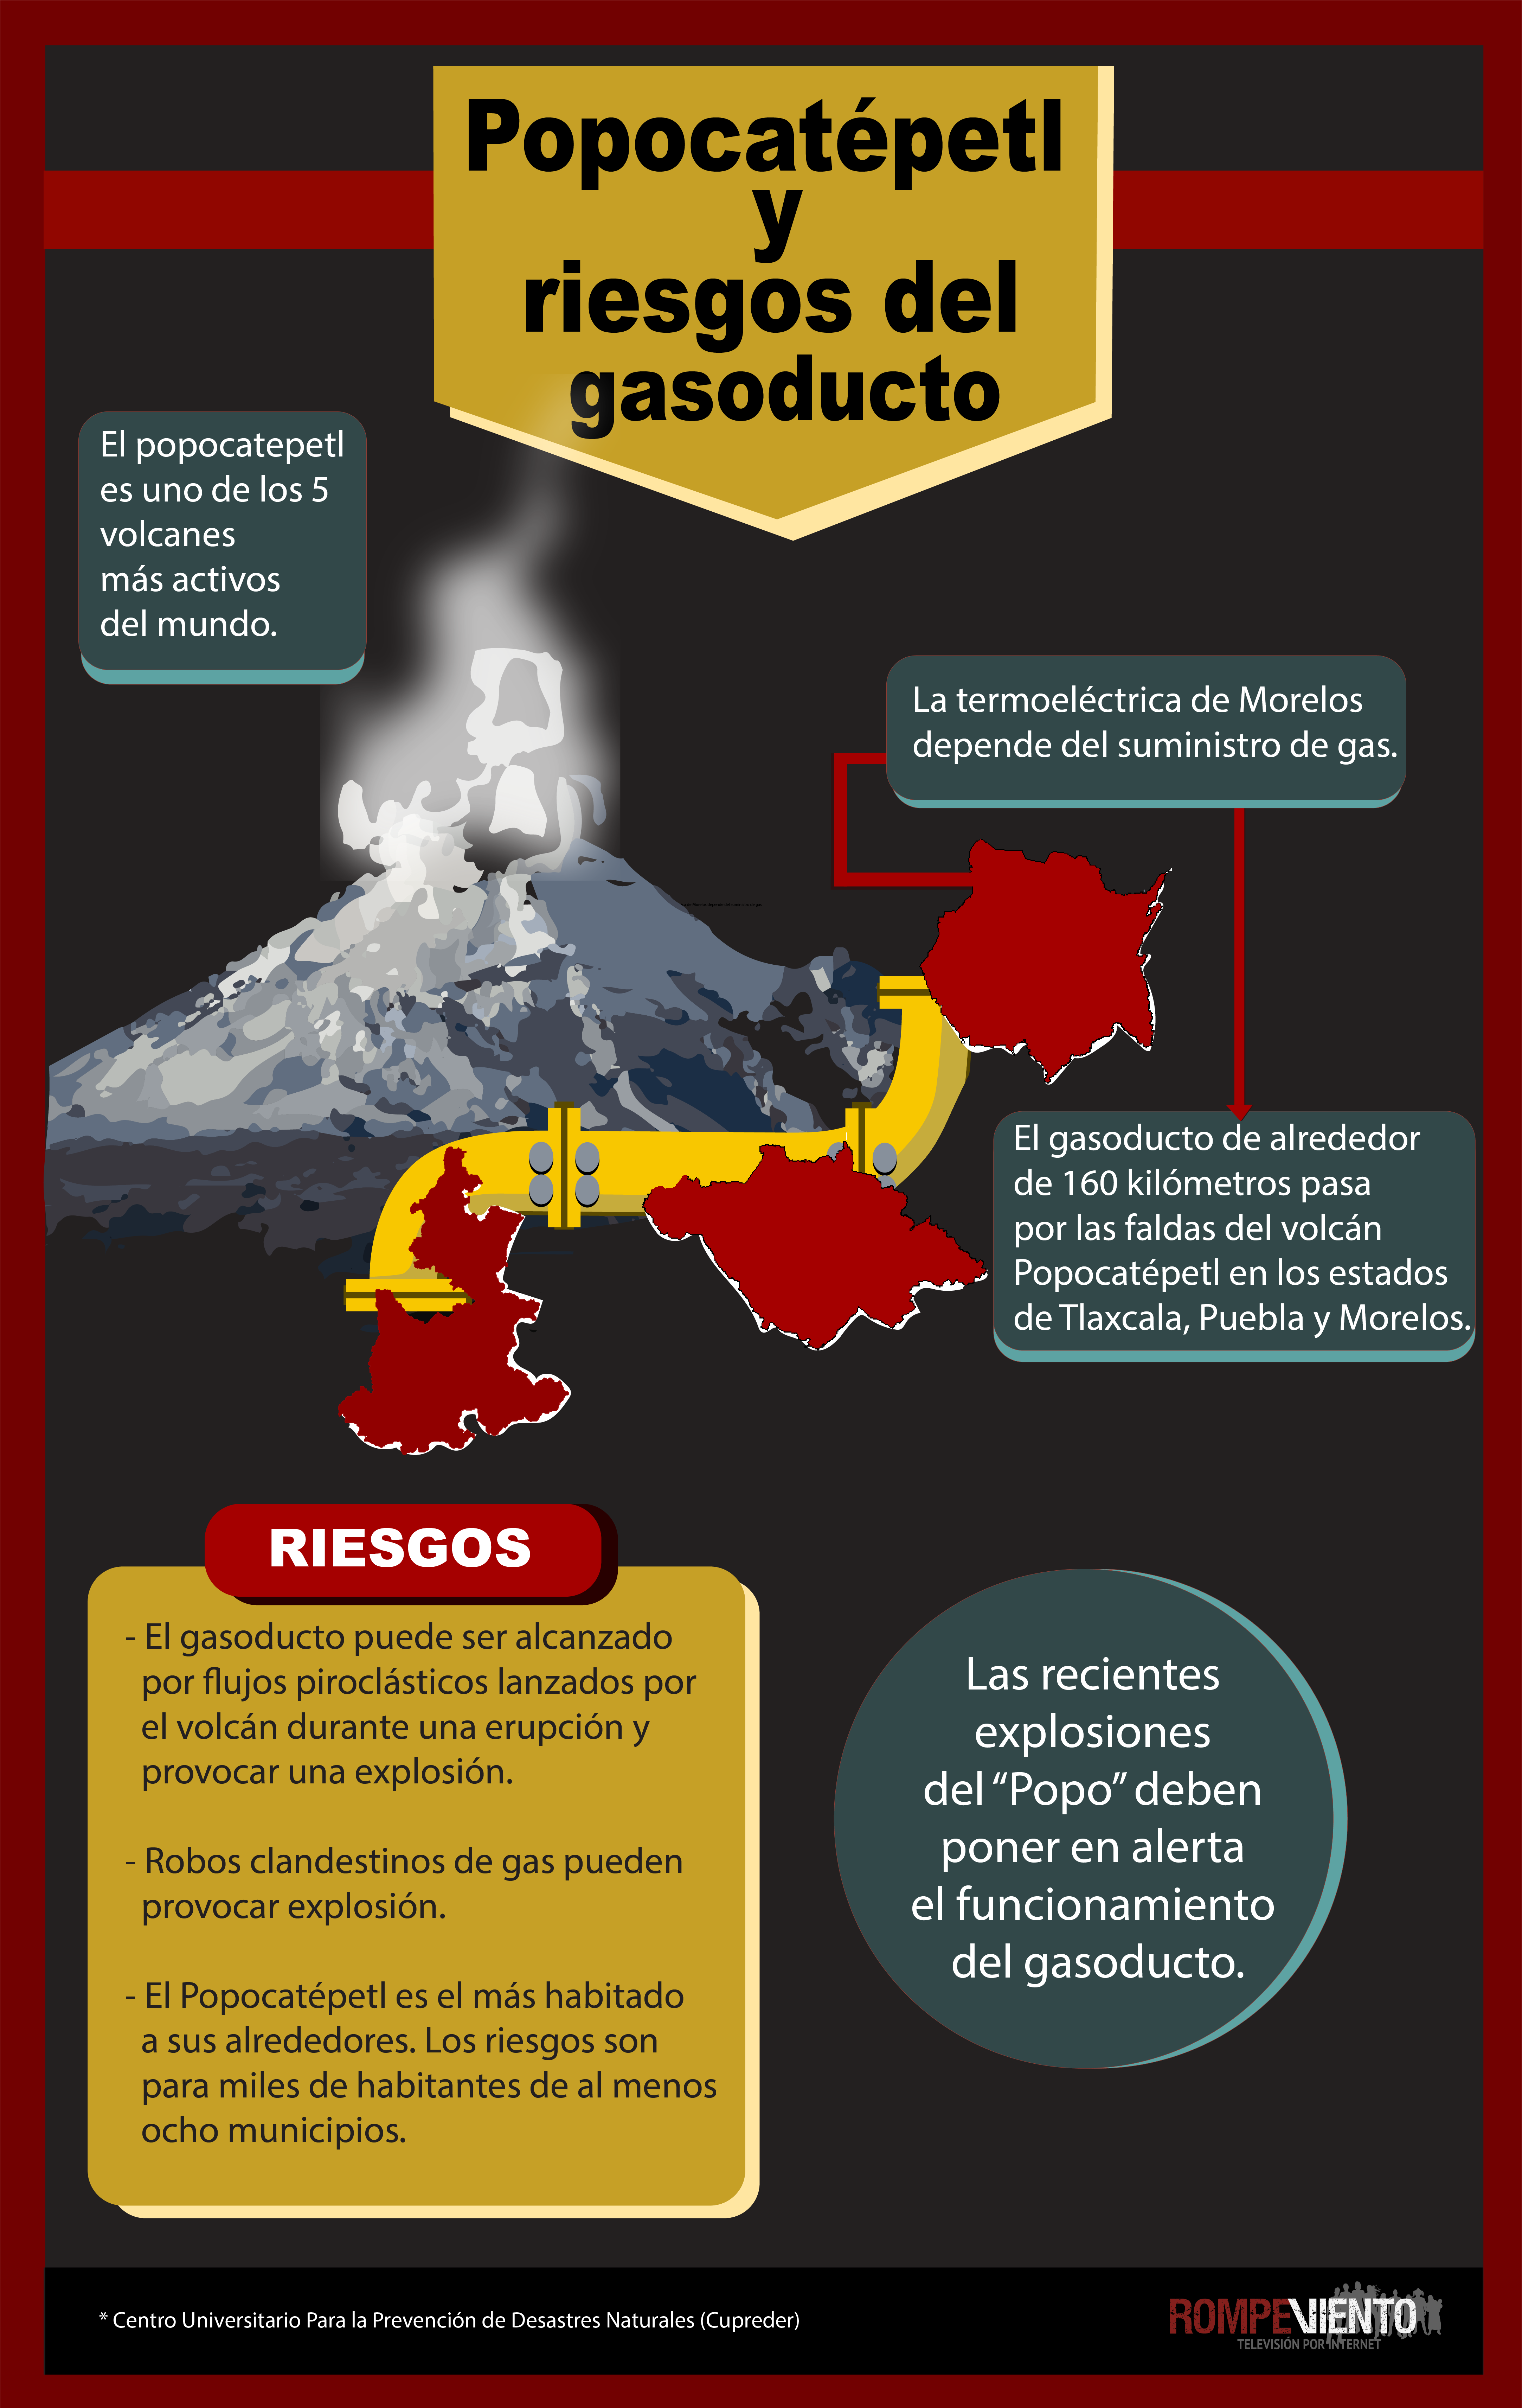 Popocatépetl y riesgos del gasoducto